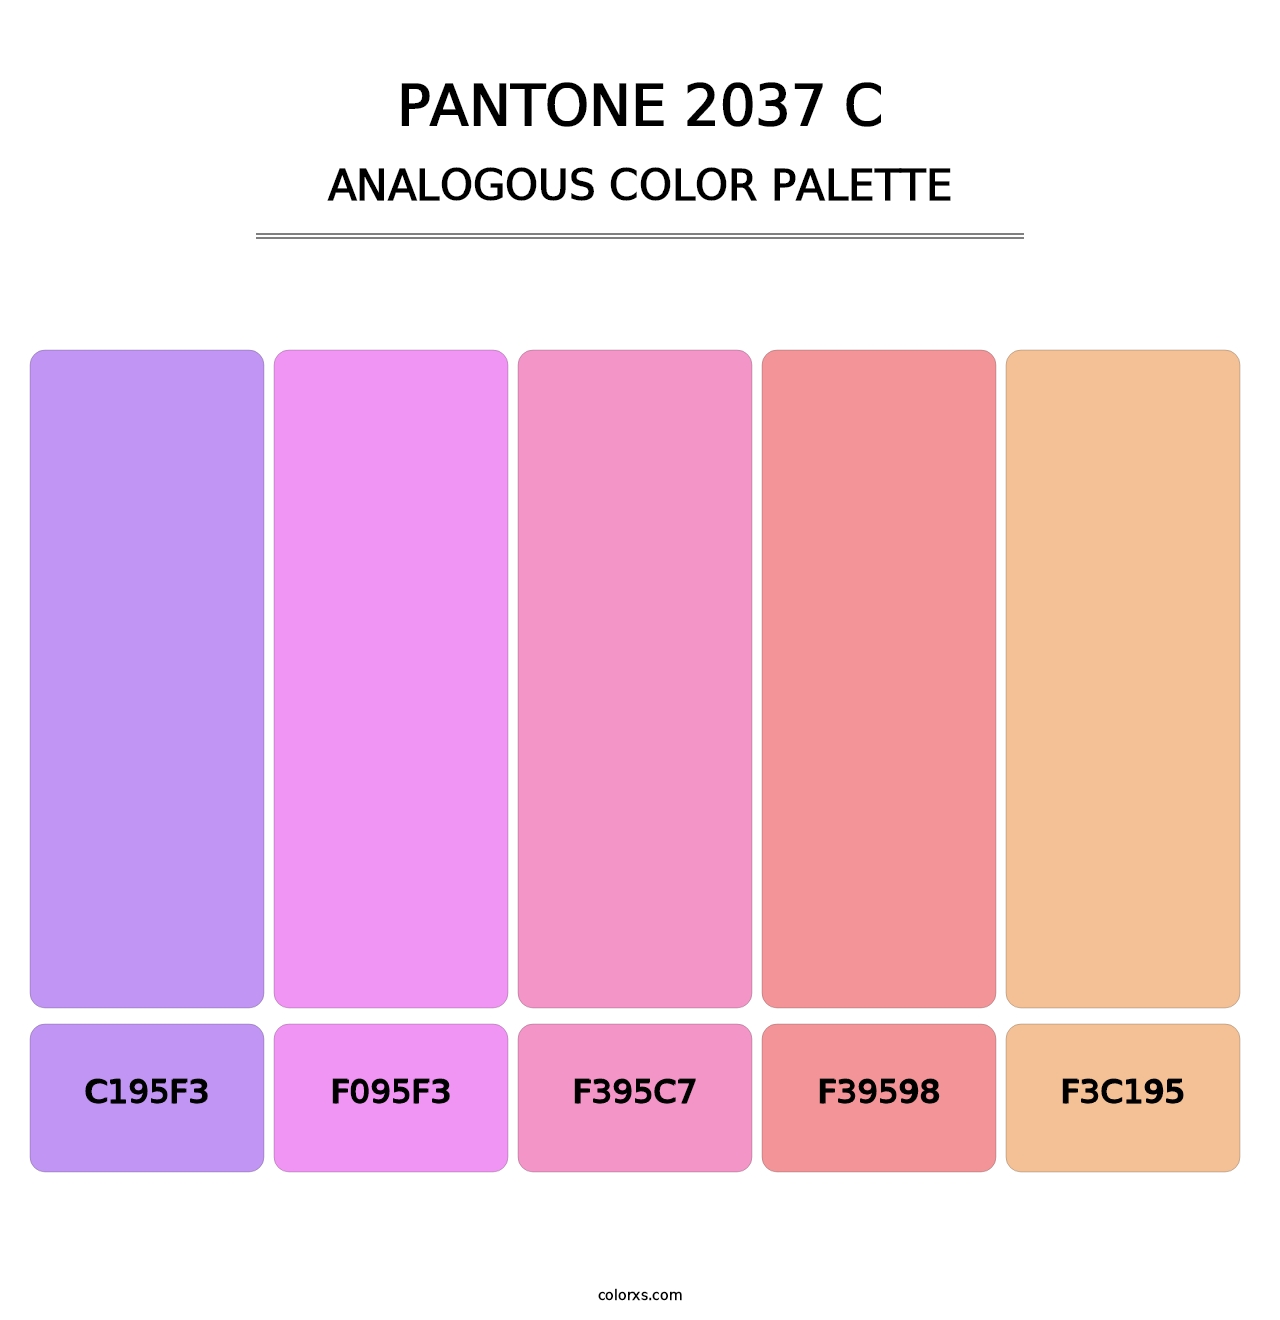 PANTONE 2037 C - Analogous Color Palette